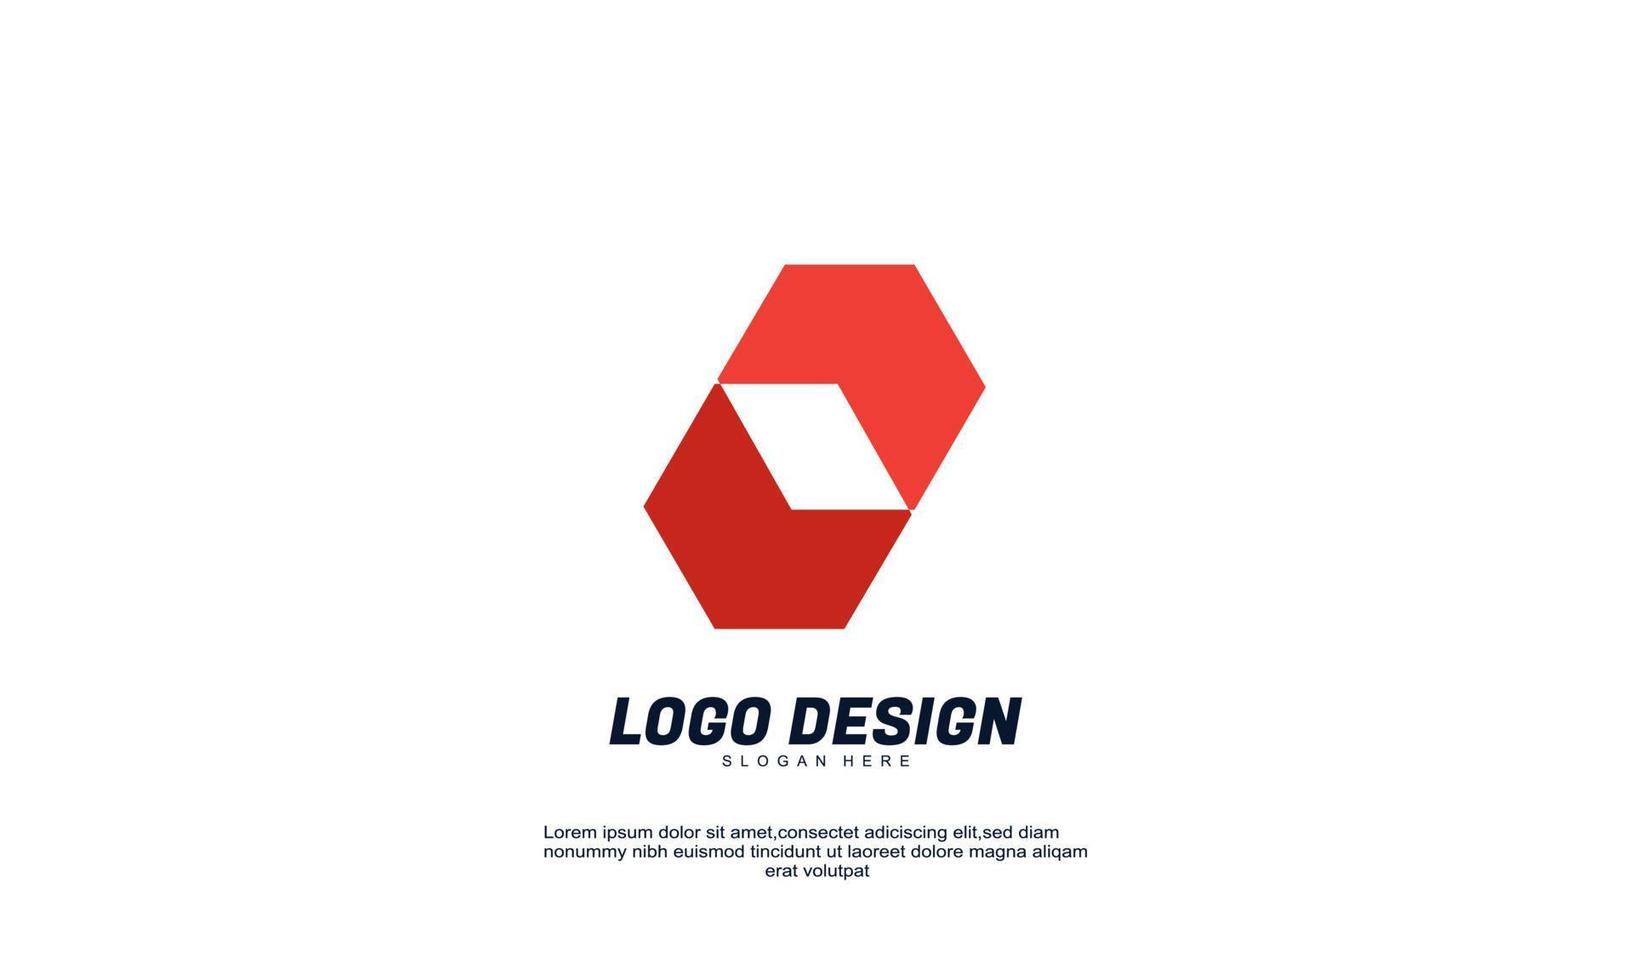 vettore d'archivio astratto creativo idea identità di marca logo moderno per azienda o affari colore rosso con modello design piatto